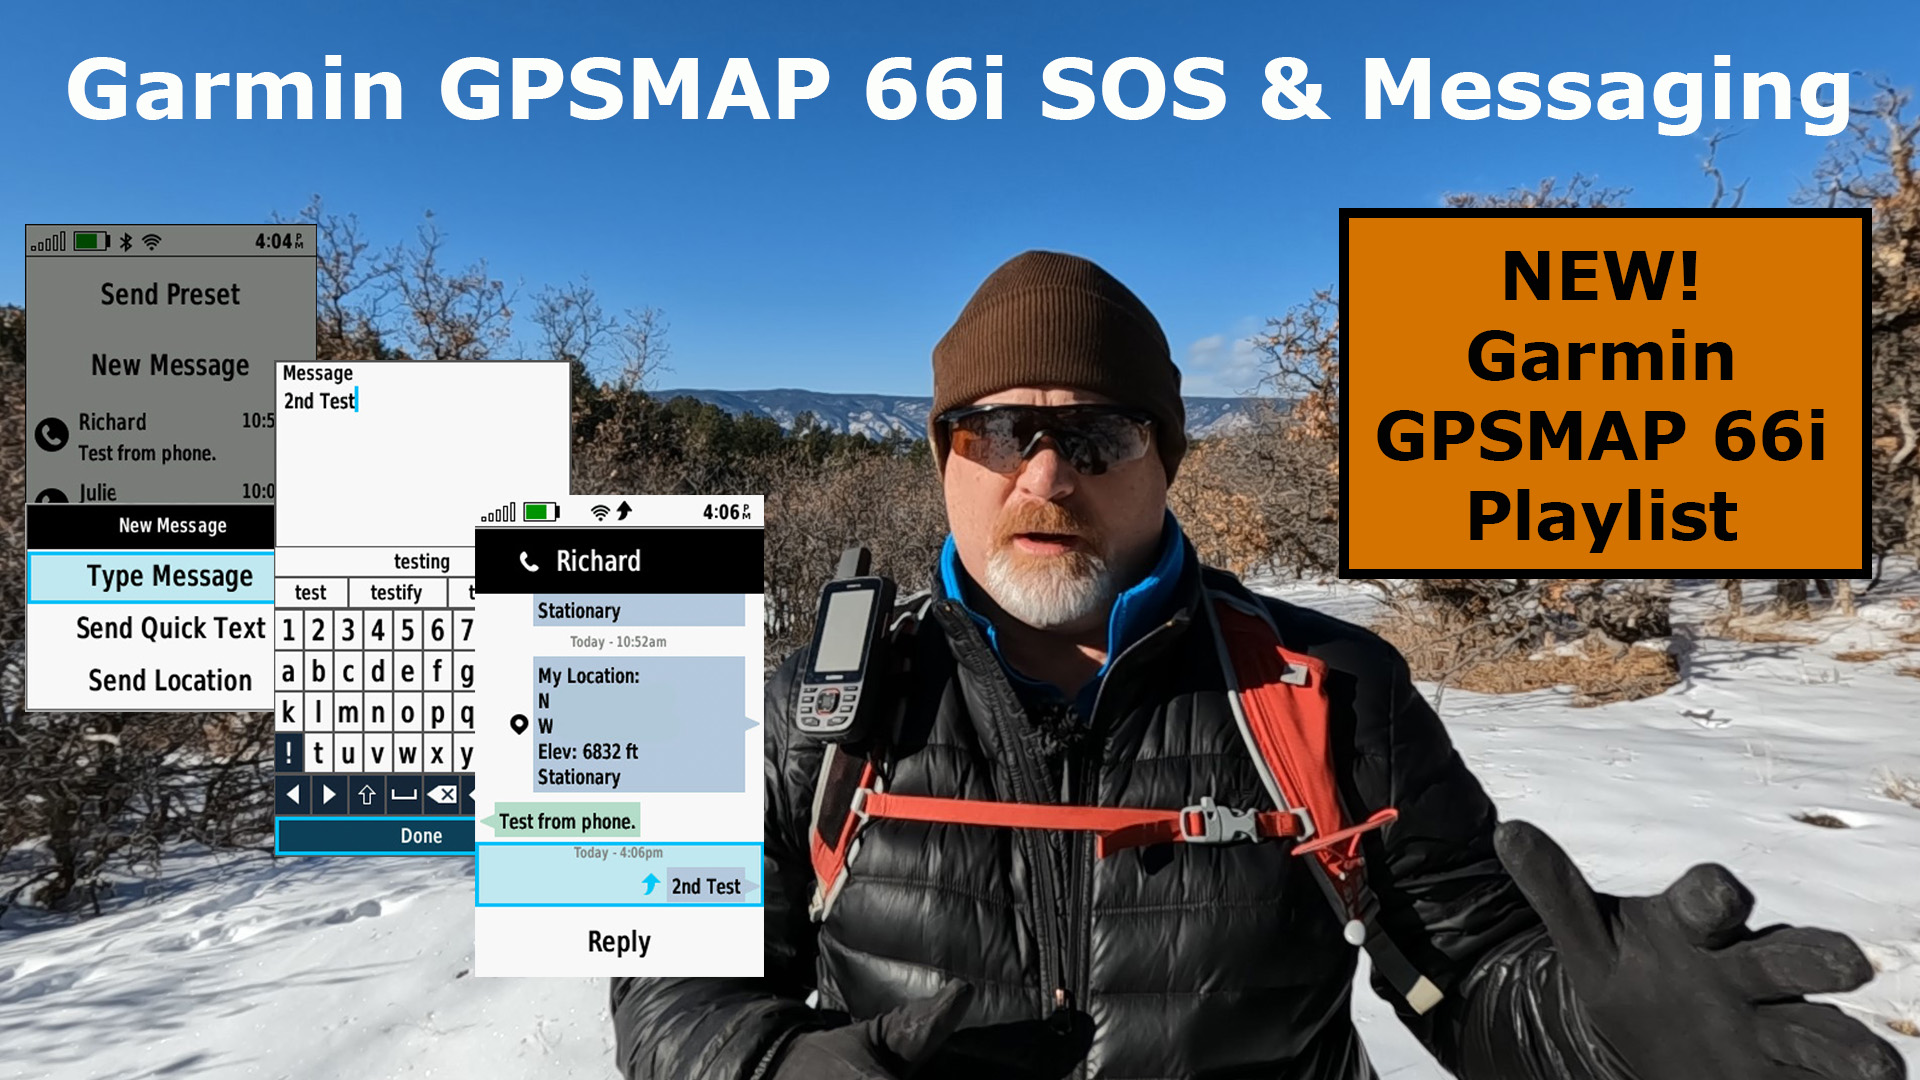 New Garmin GPSMAP 66i Playlist